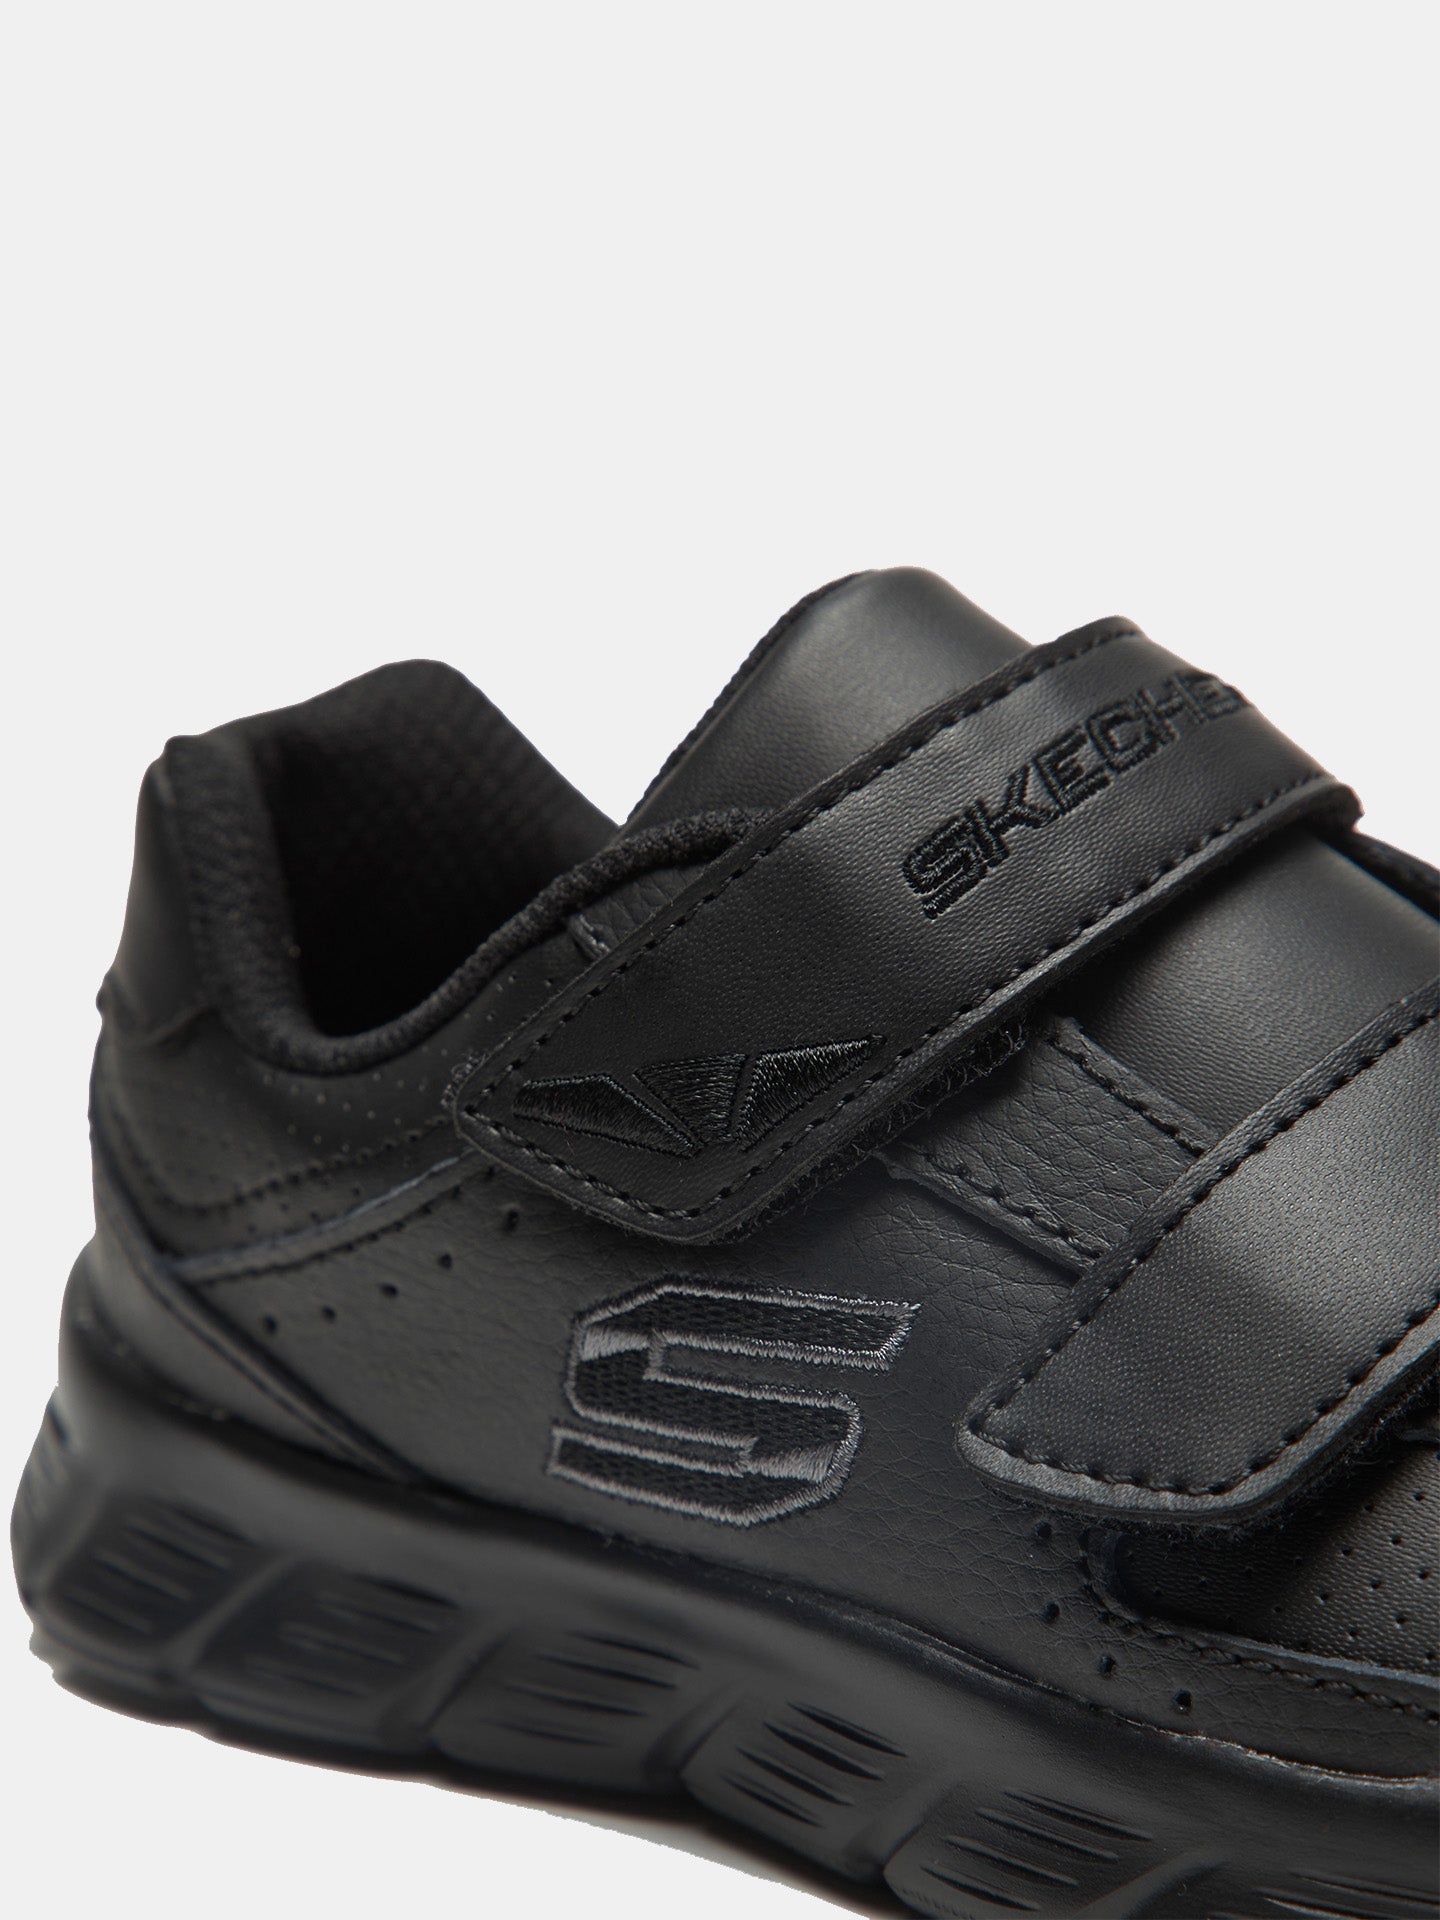 Skechers Comfy Flex School Shoes #color_Black